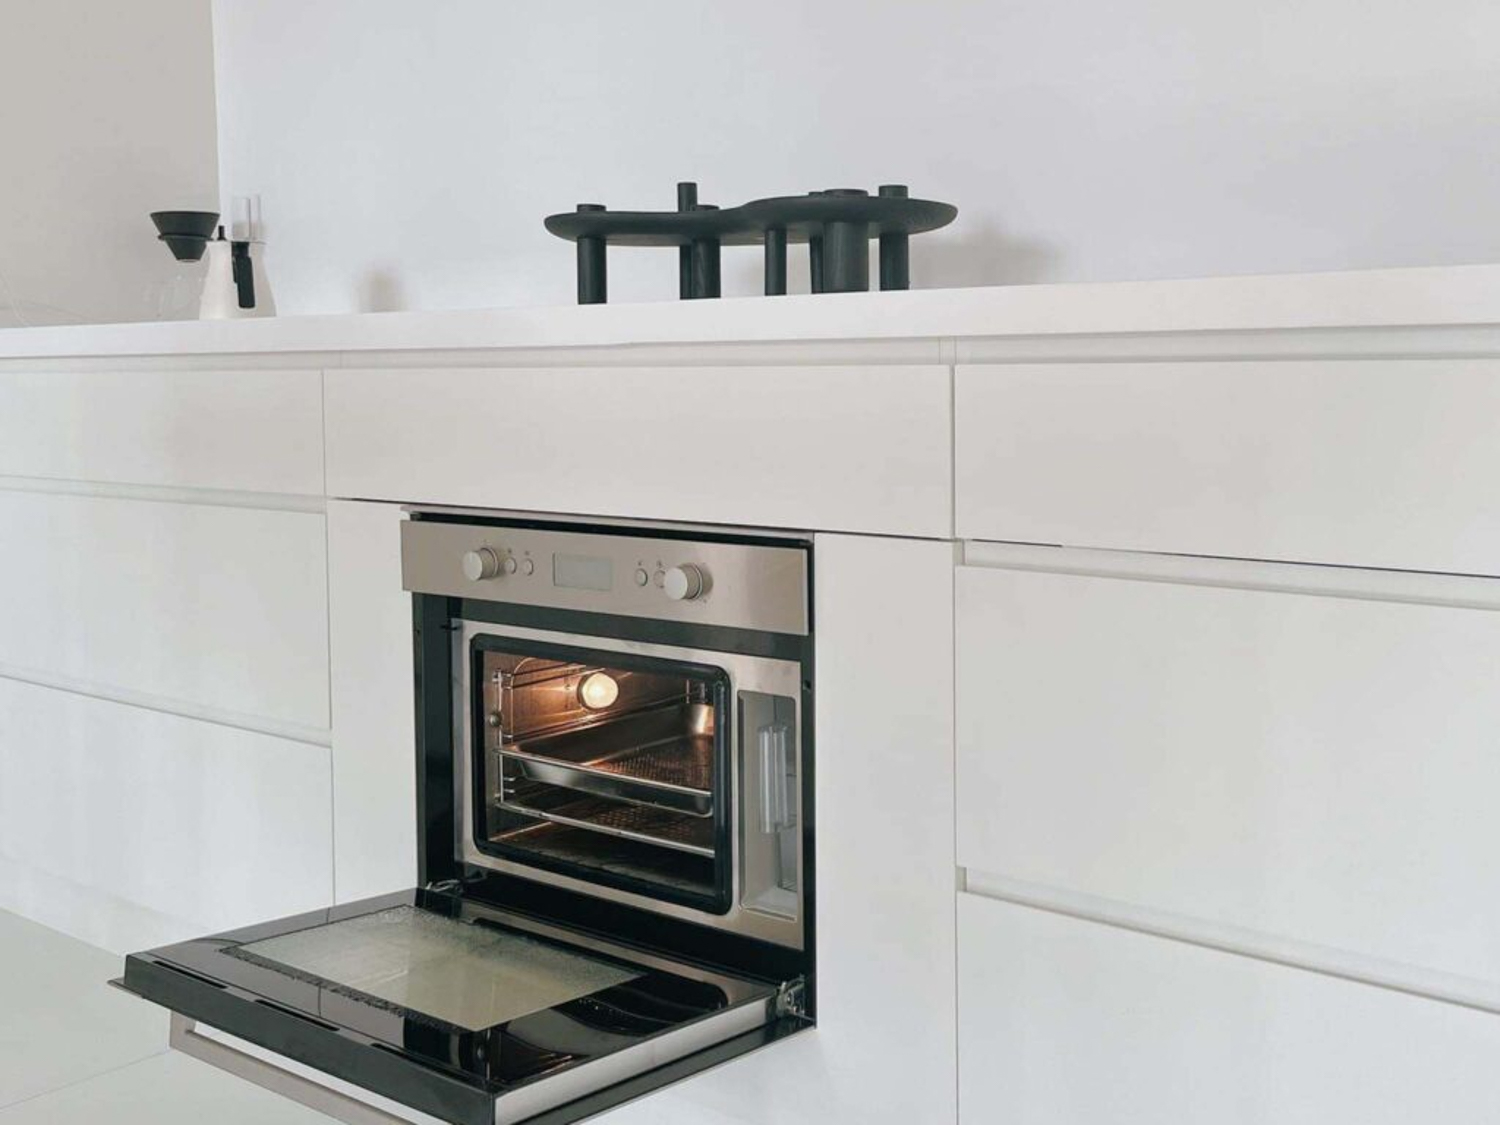 Thiết kế đẹp và tính năng thông minh lò hấp Elica EST 60 IX - PRF0113433 tôn lên vẻ đẹp của căn bếp